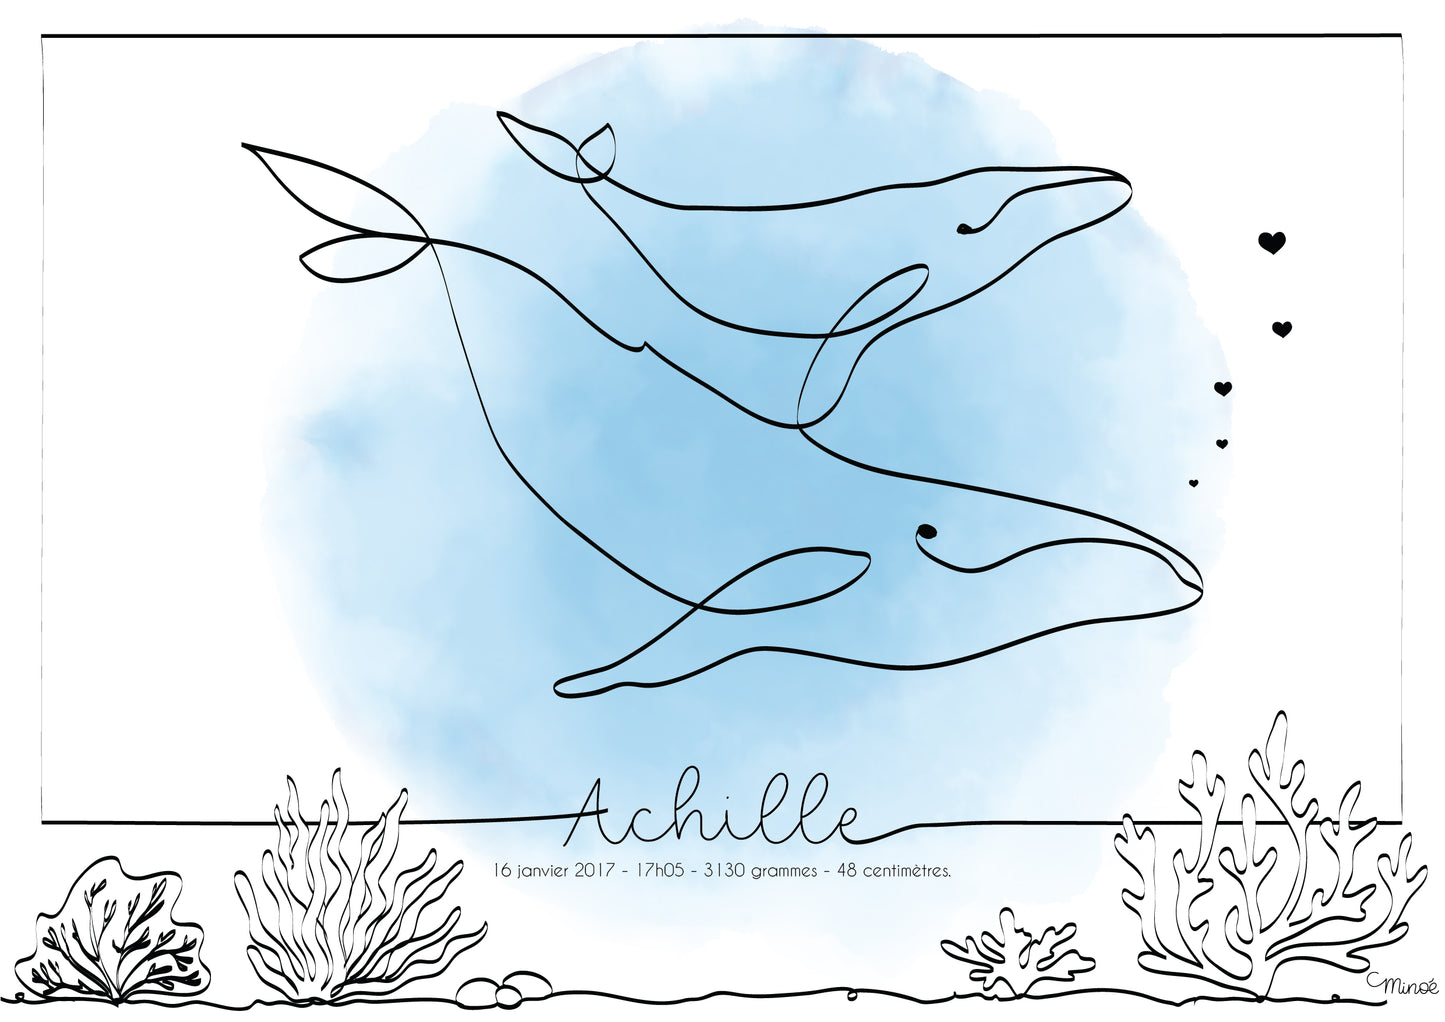 Illustration de naissance - Duo de baleines